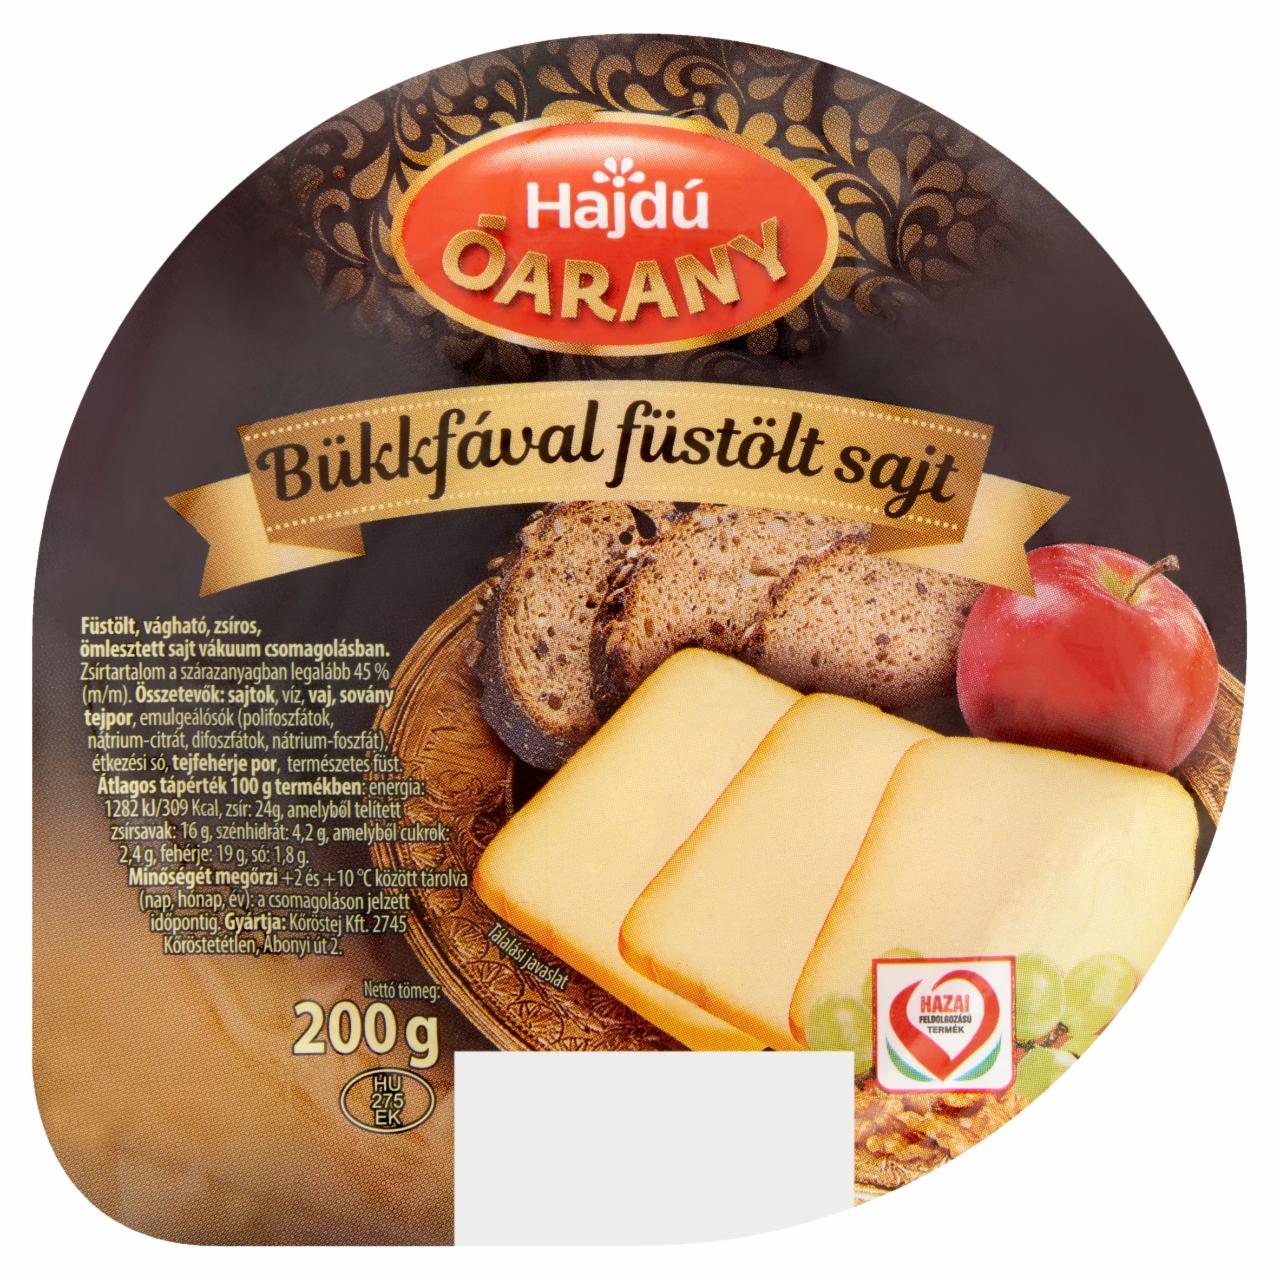 Képek - Hajdú Óarany füstölt, vágható, zsíros ömlesztett sajt 200 g